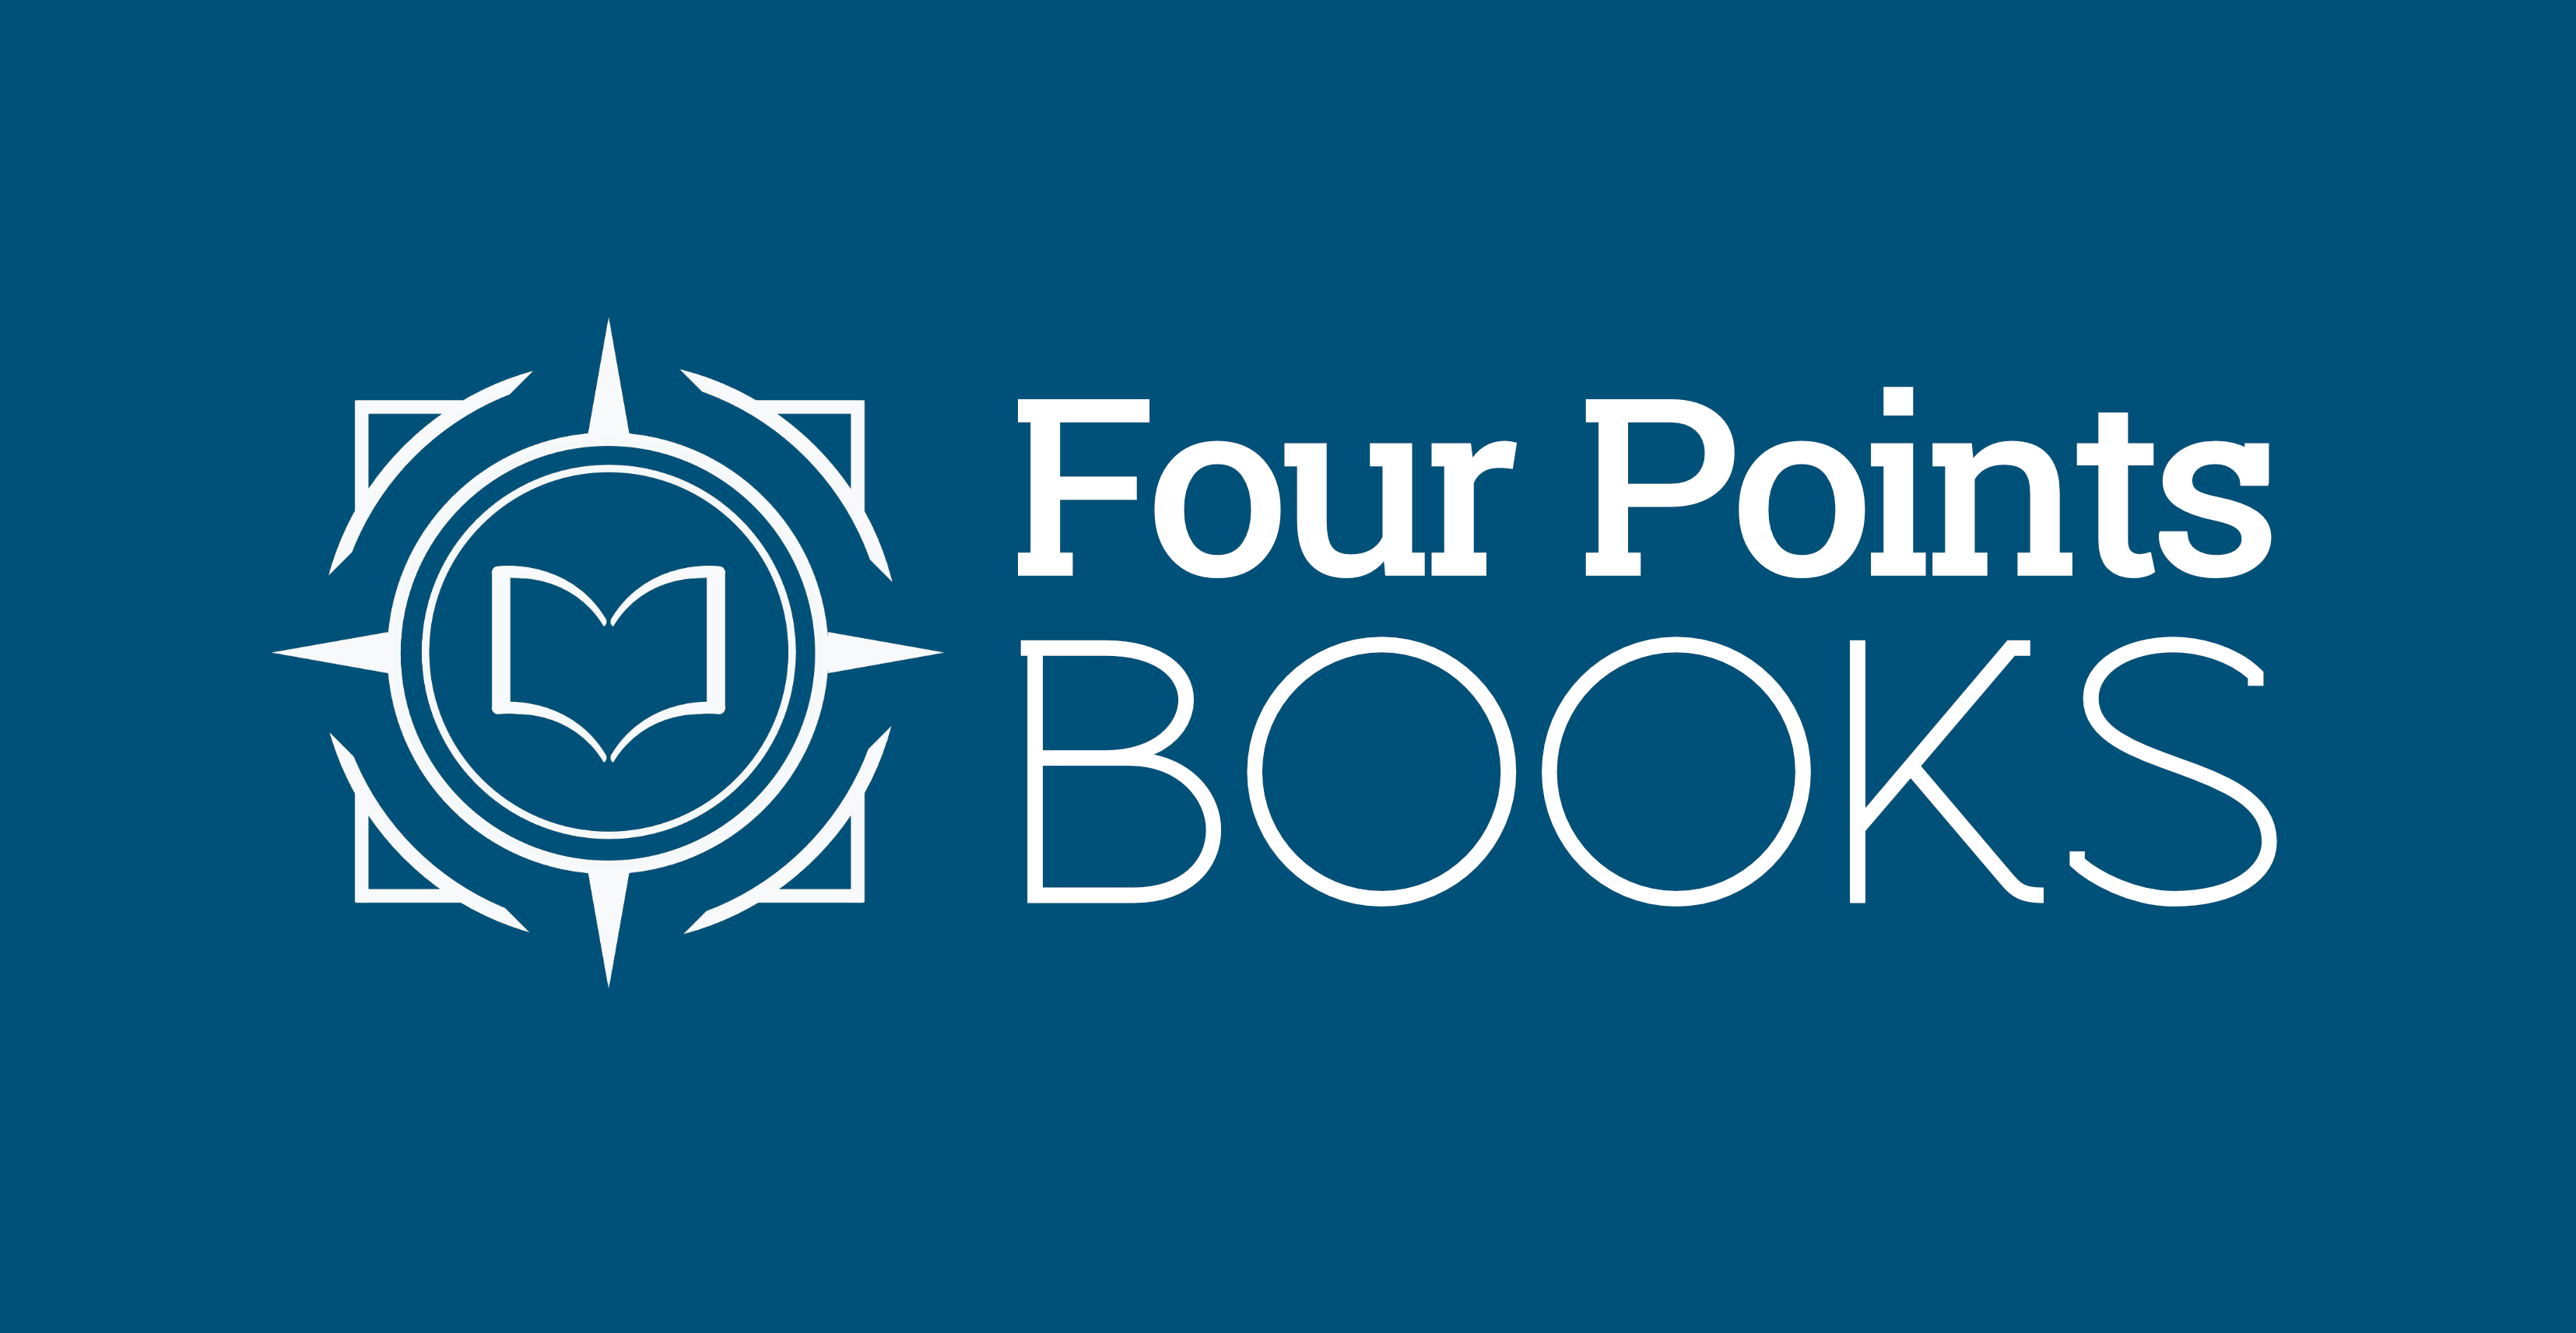 Four Points Books Inc.